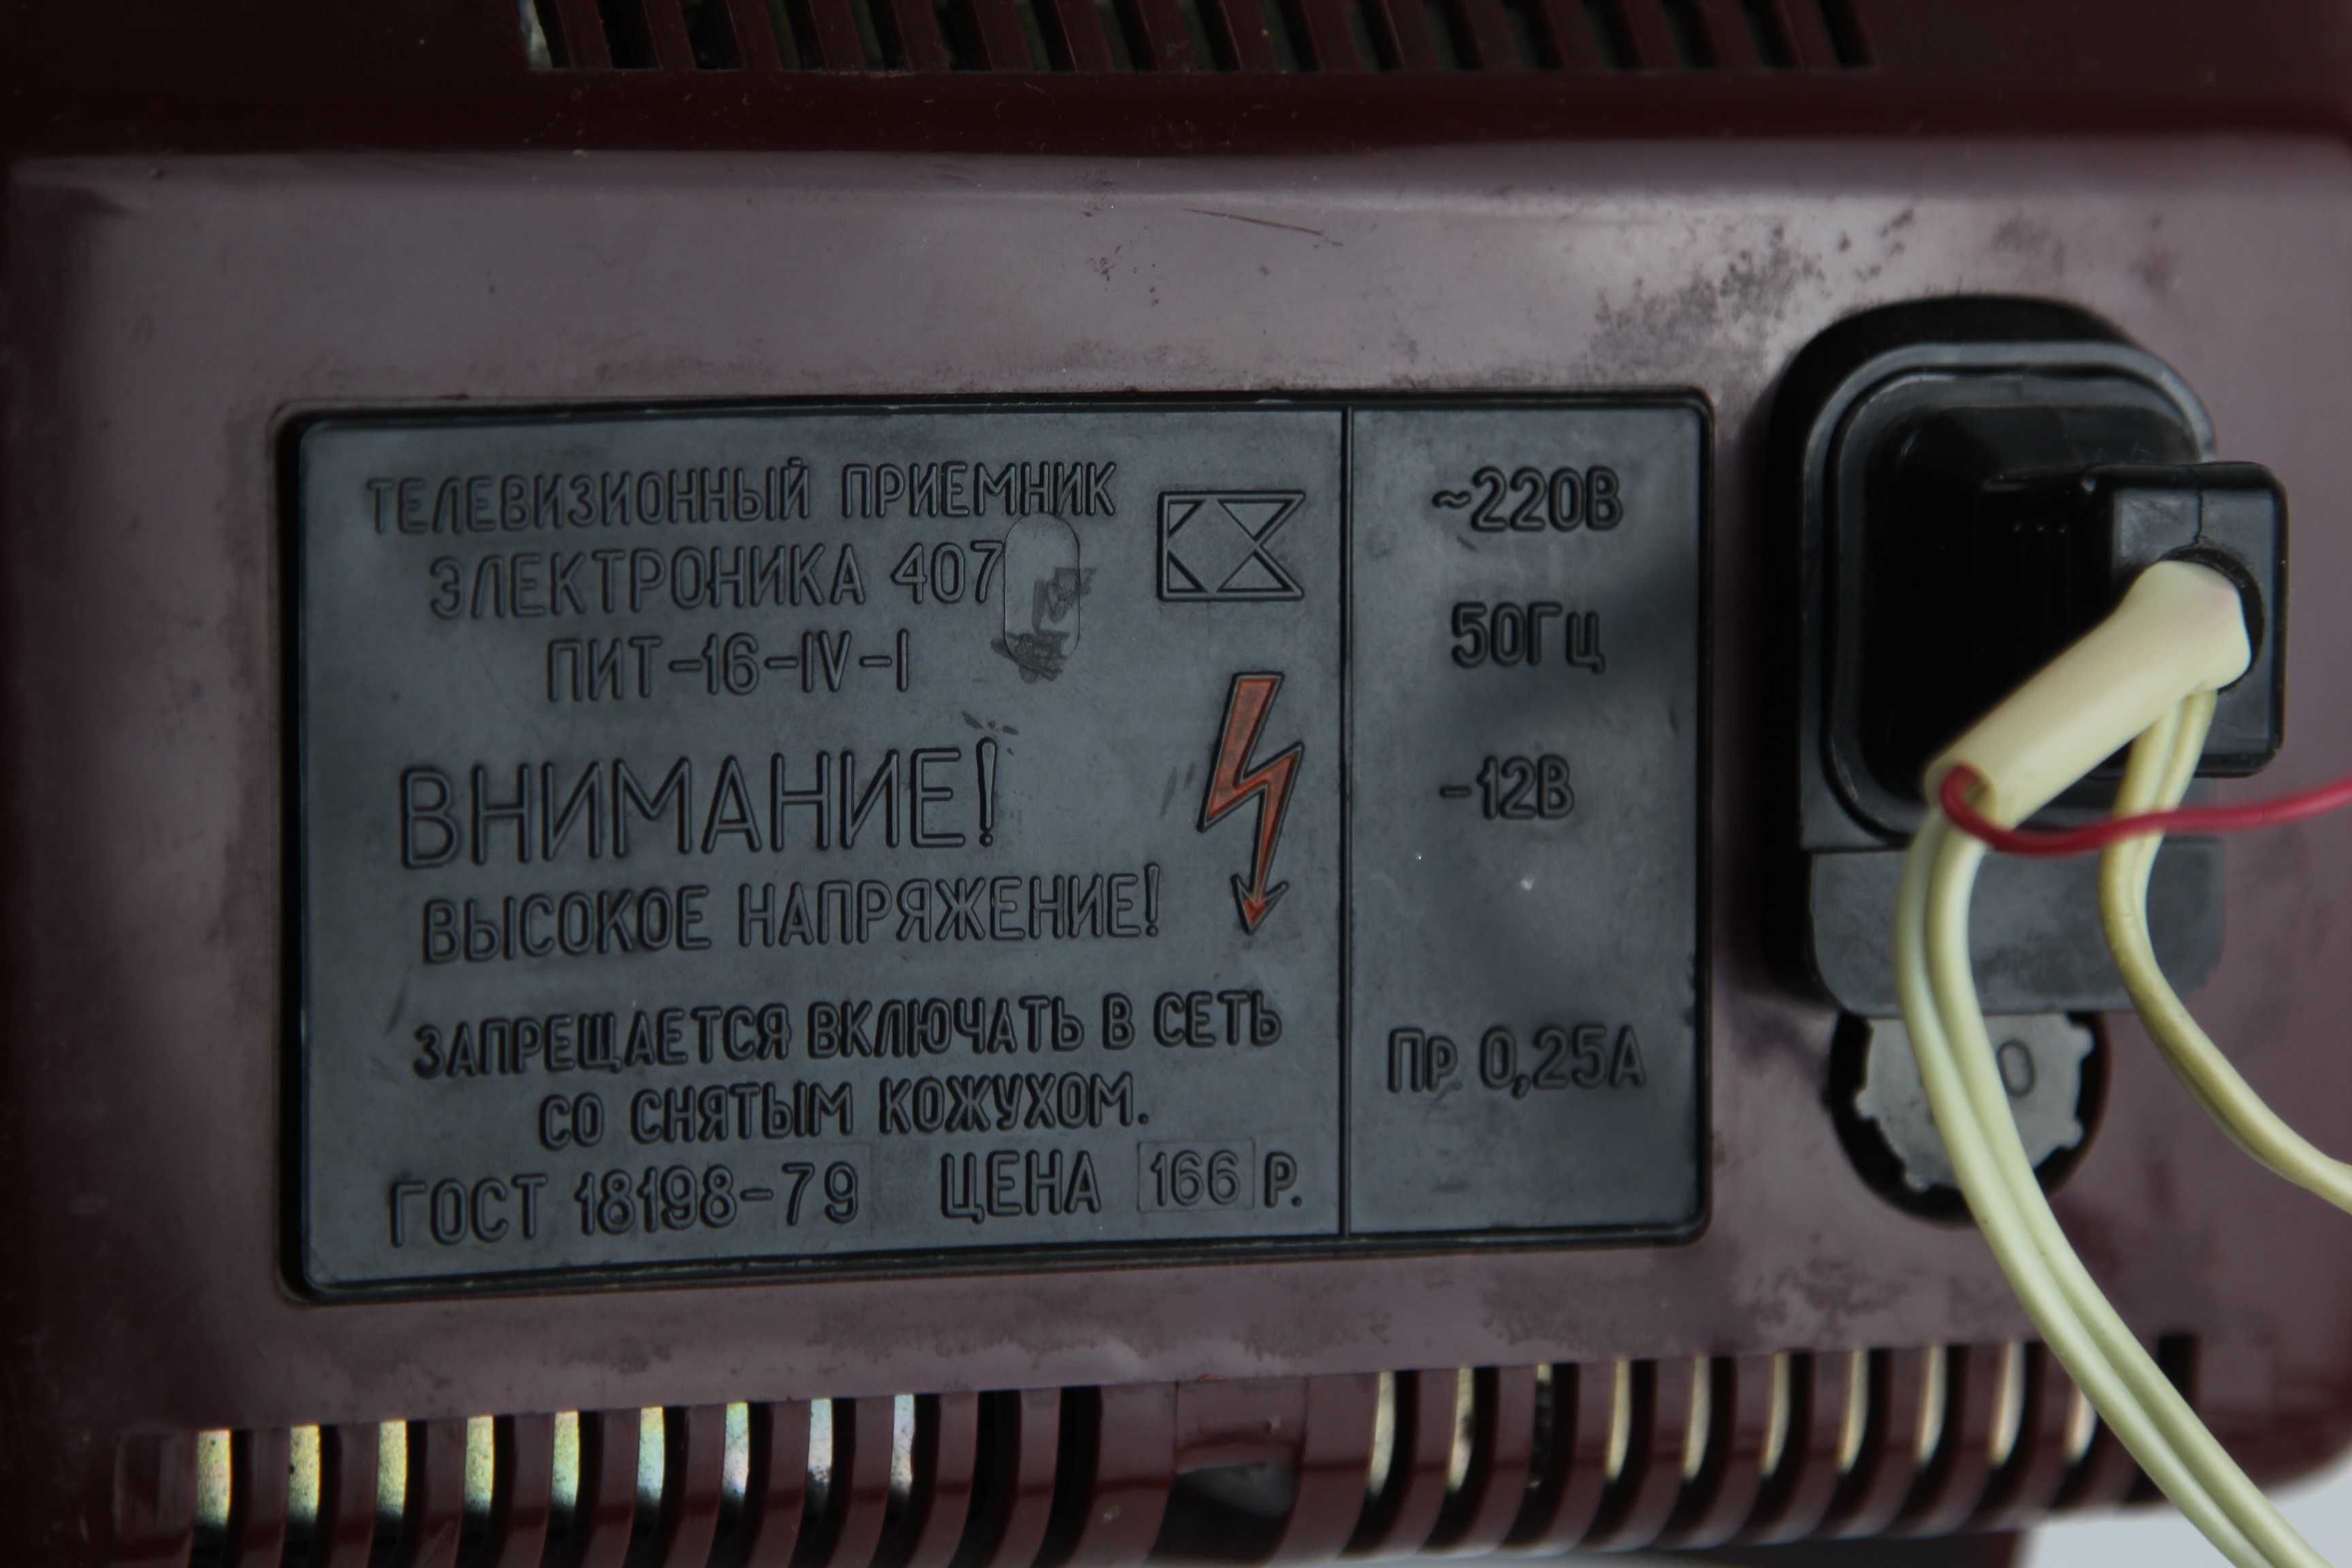 Телевизор ЭЛЕКТРОНИКА - 407 Телевизионный приёмник